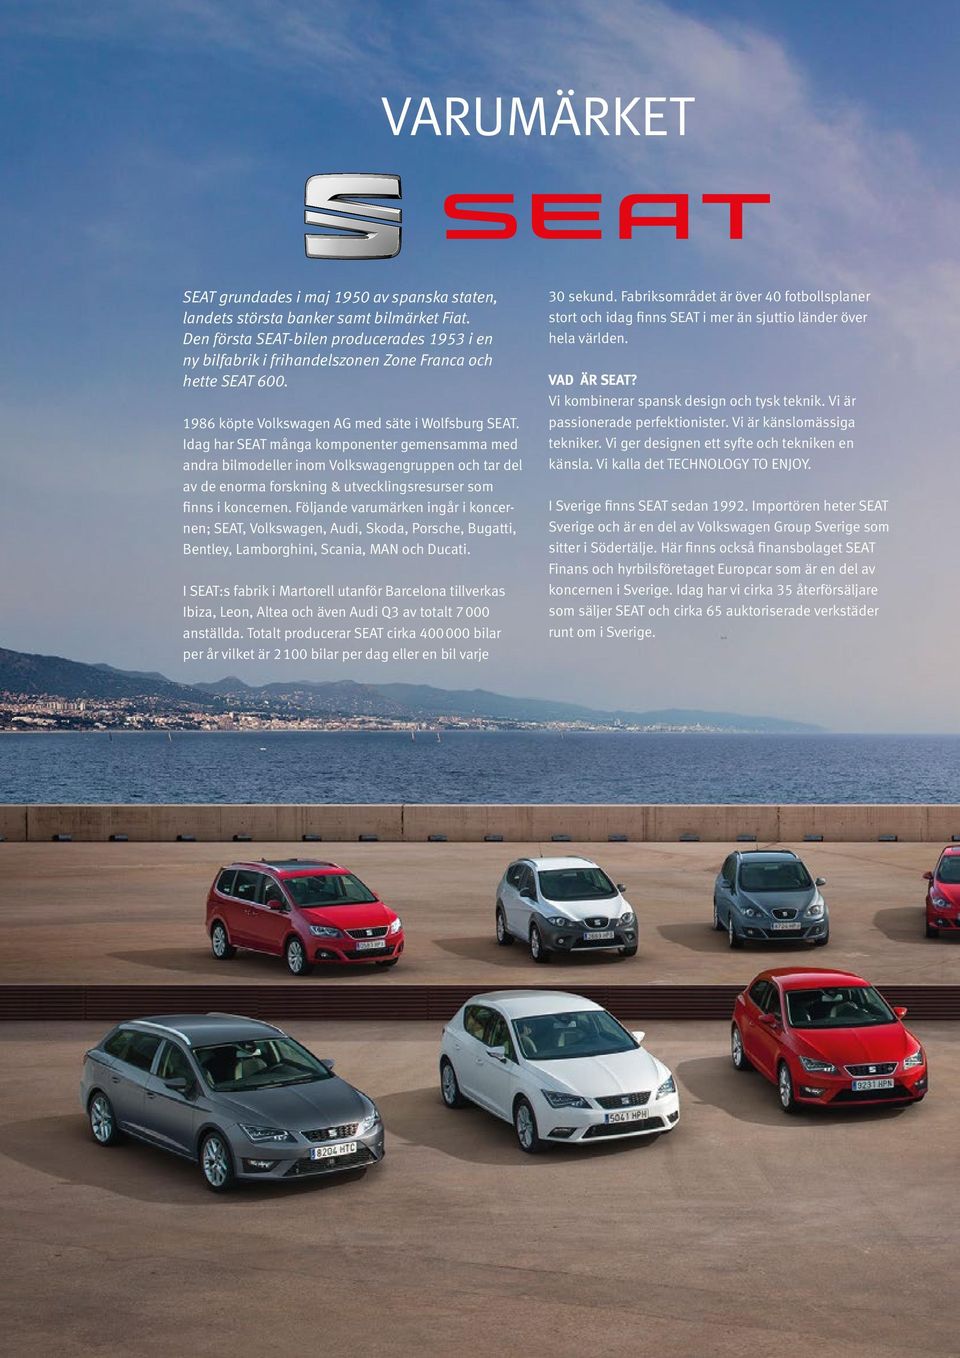 Idag har SEAT många komponenter gemensamma med andra bilmodeller inom Volkswagengruppen och tar del av de enorma forskning & utvecklingsresurser som finns i koncernen.